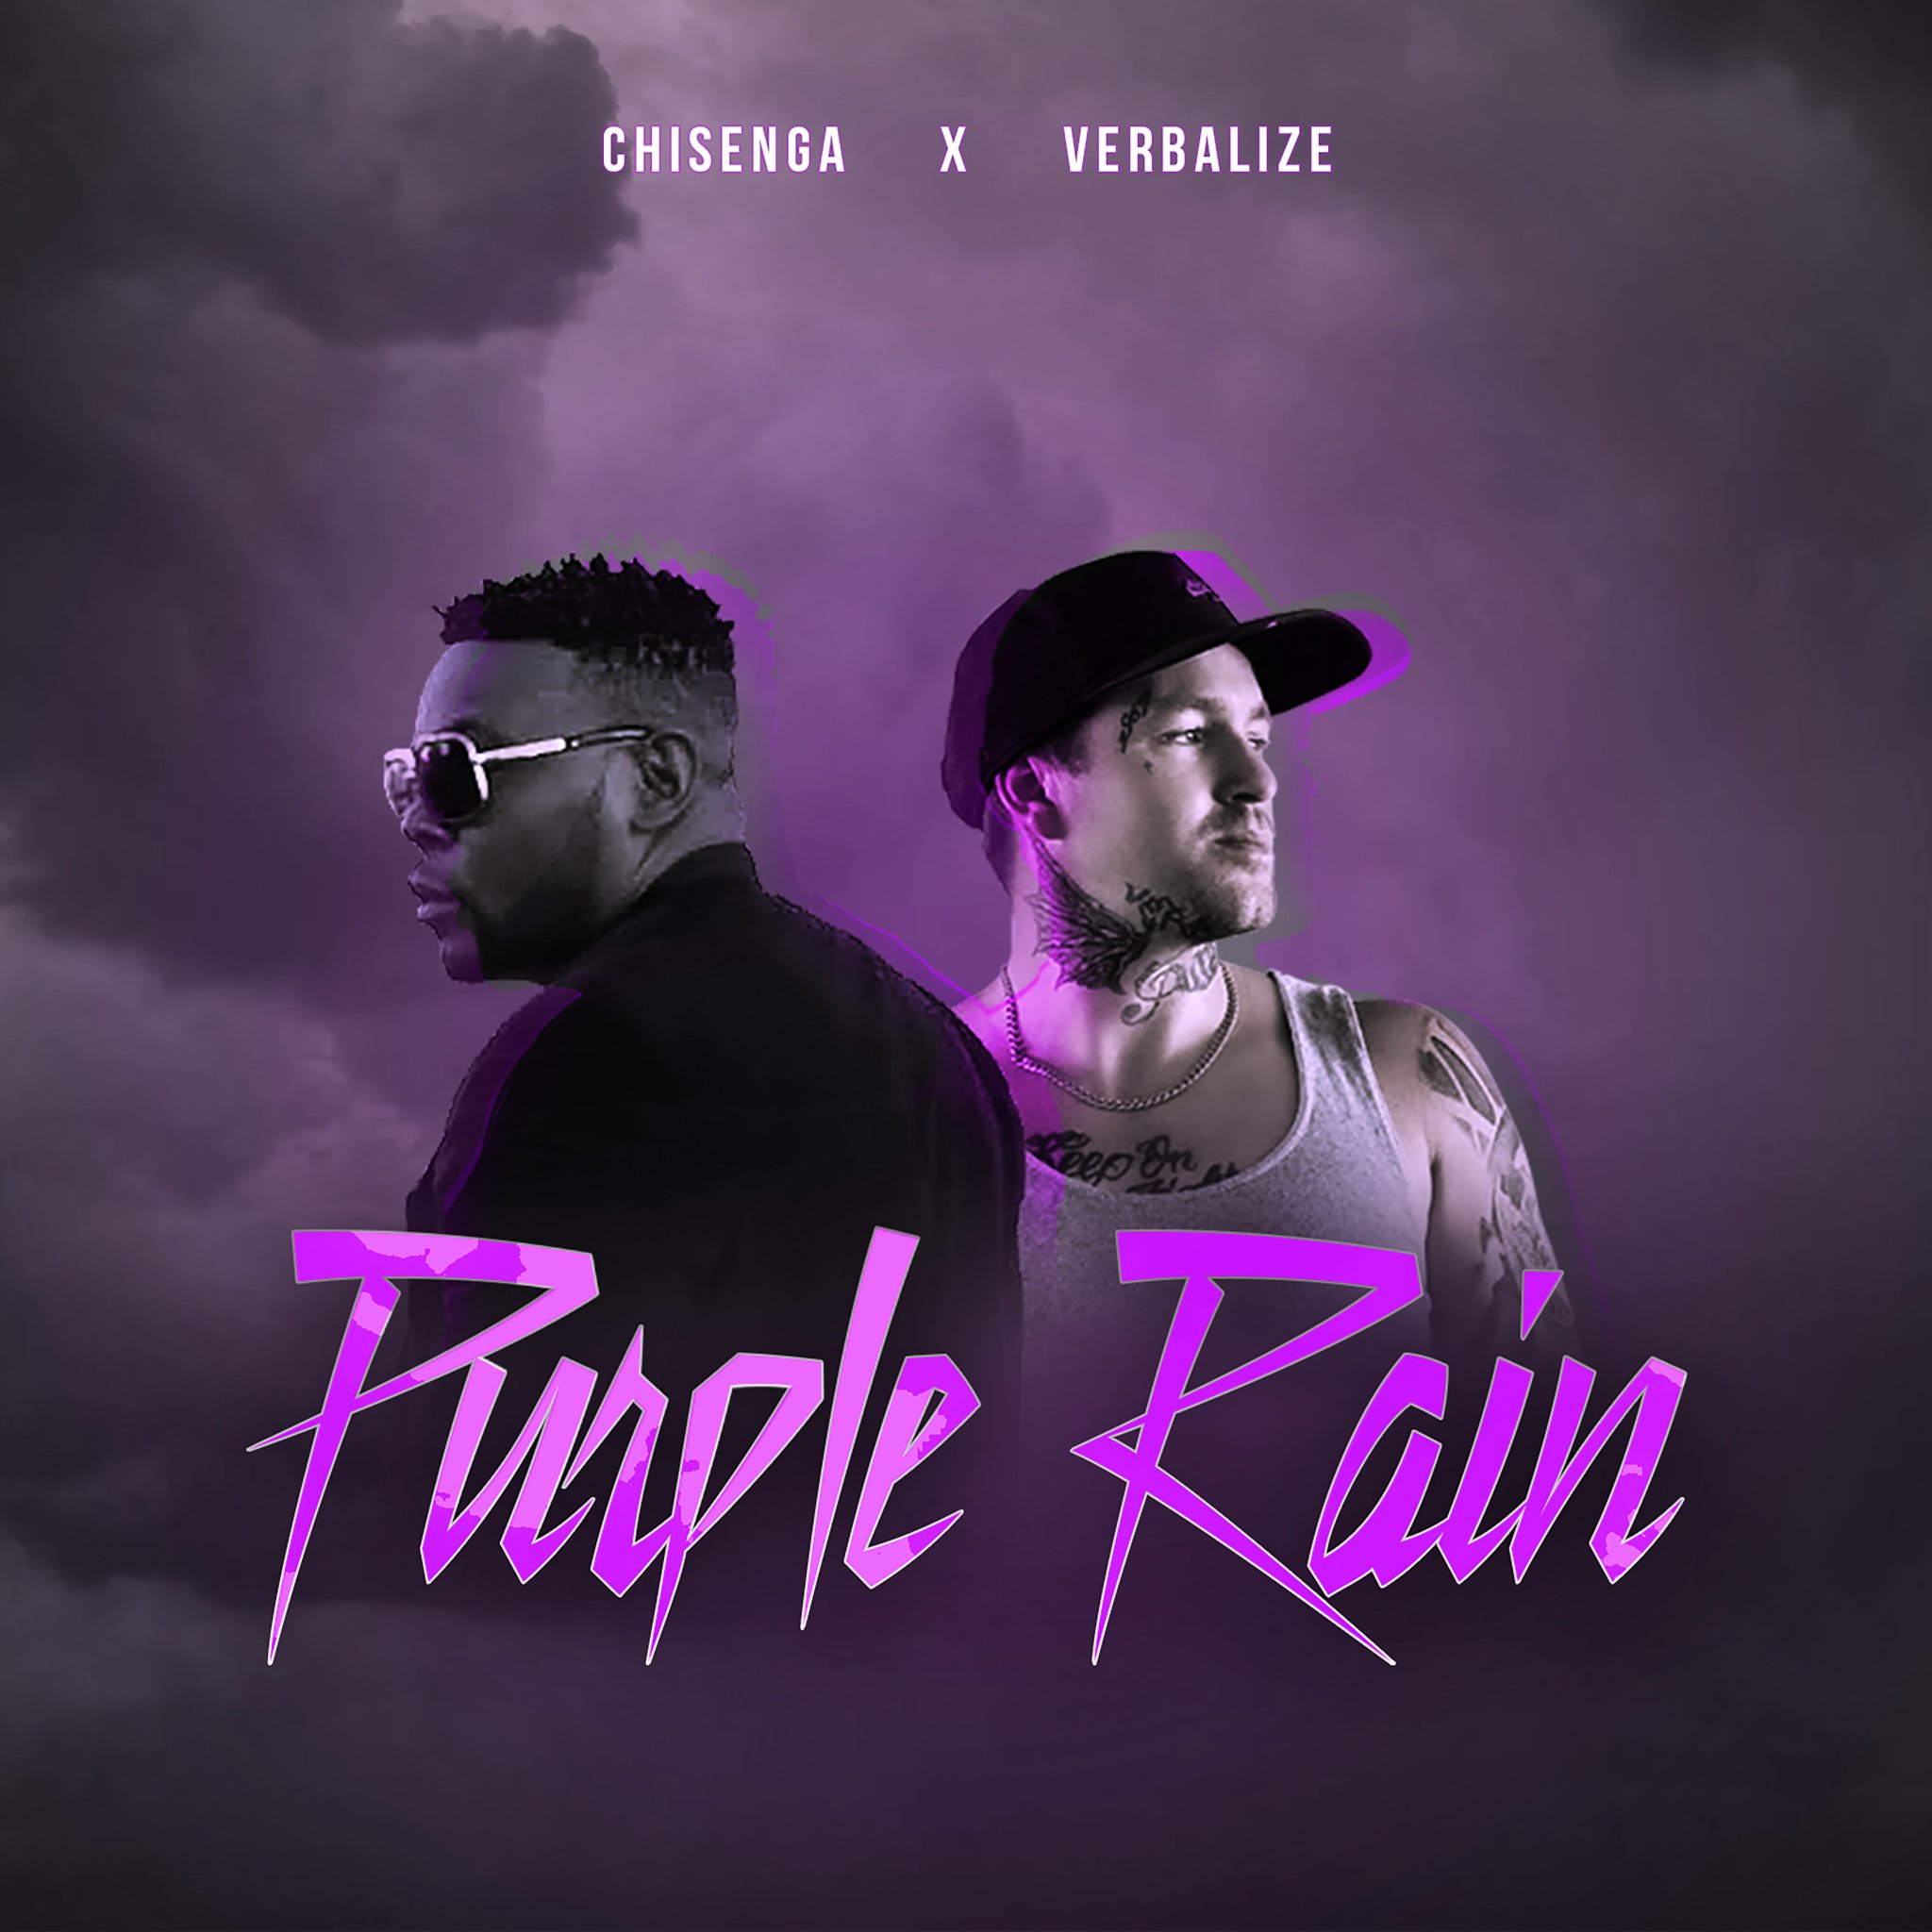 Chisenga x Verbalize - "Purple Rain"